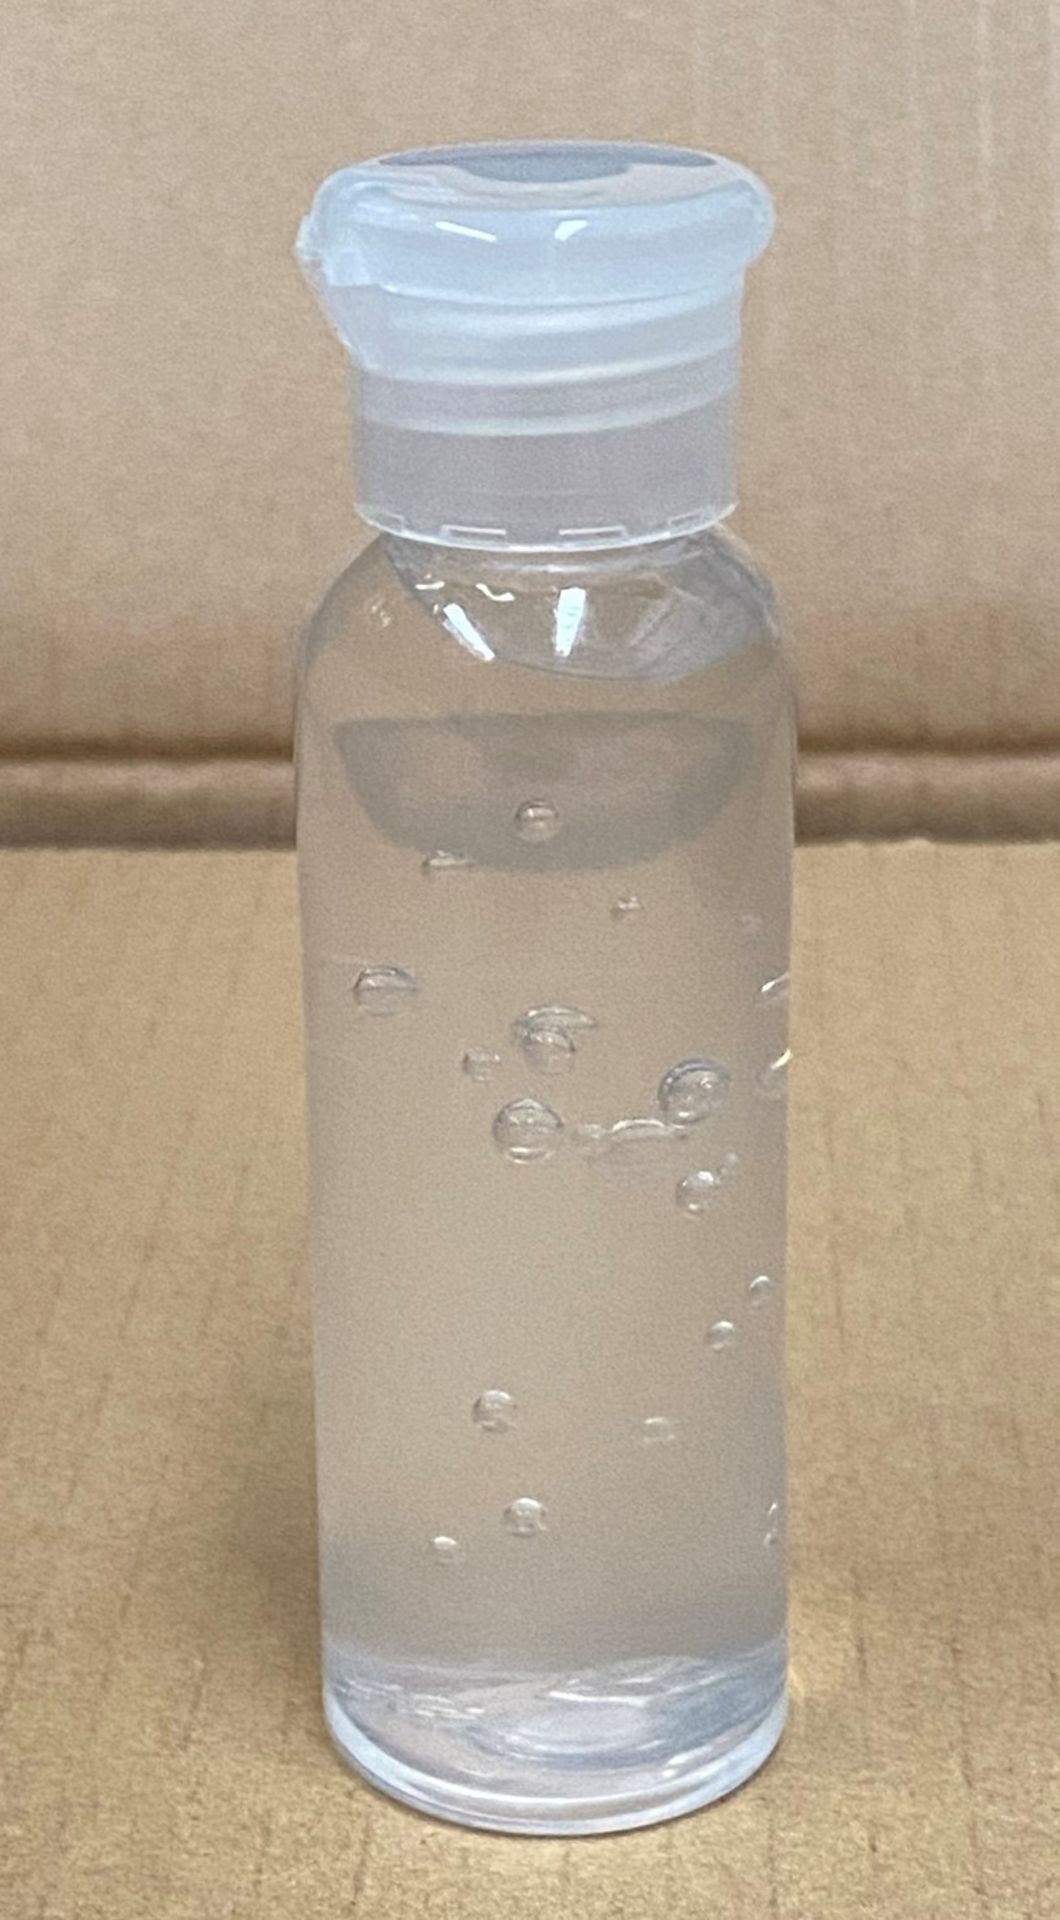 384 x 50ml flip top bottles of Rosdon Group UK hand sanitiser (Unlabelled clear plastic bottles) -